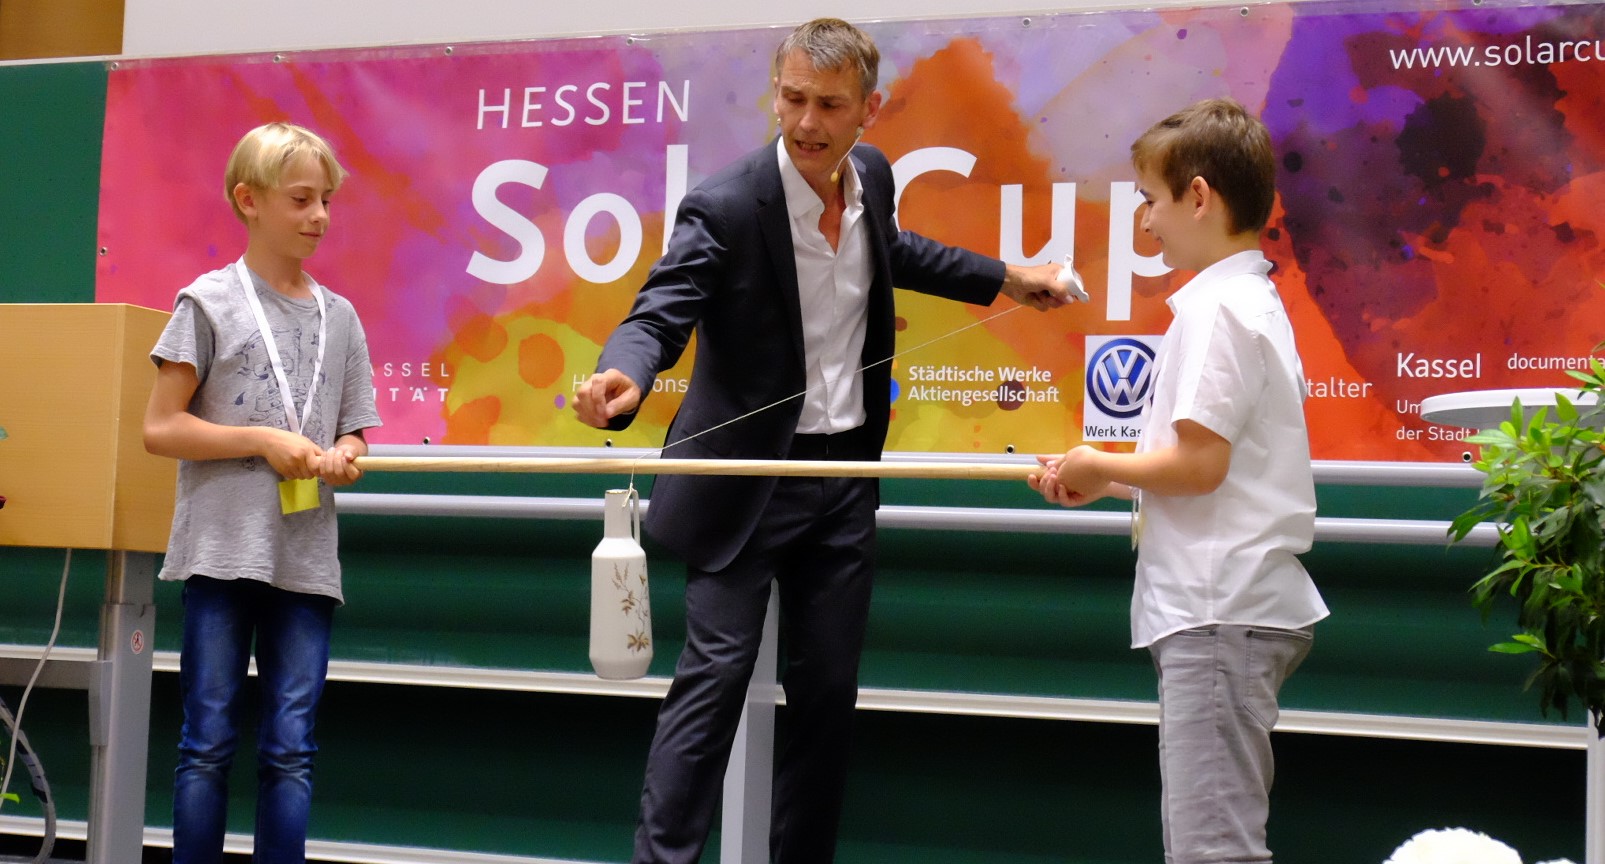 Die Sieger des Hessen SolarCup 2019 wurden geehrt